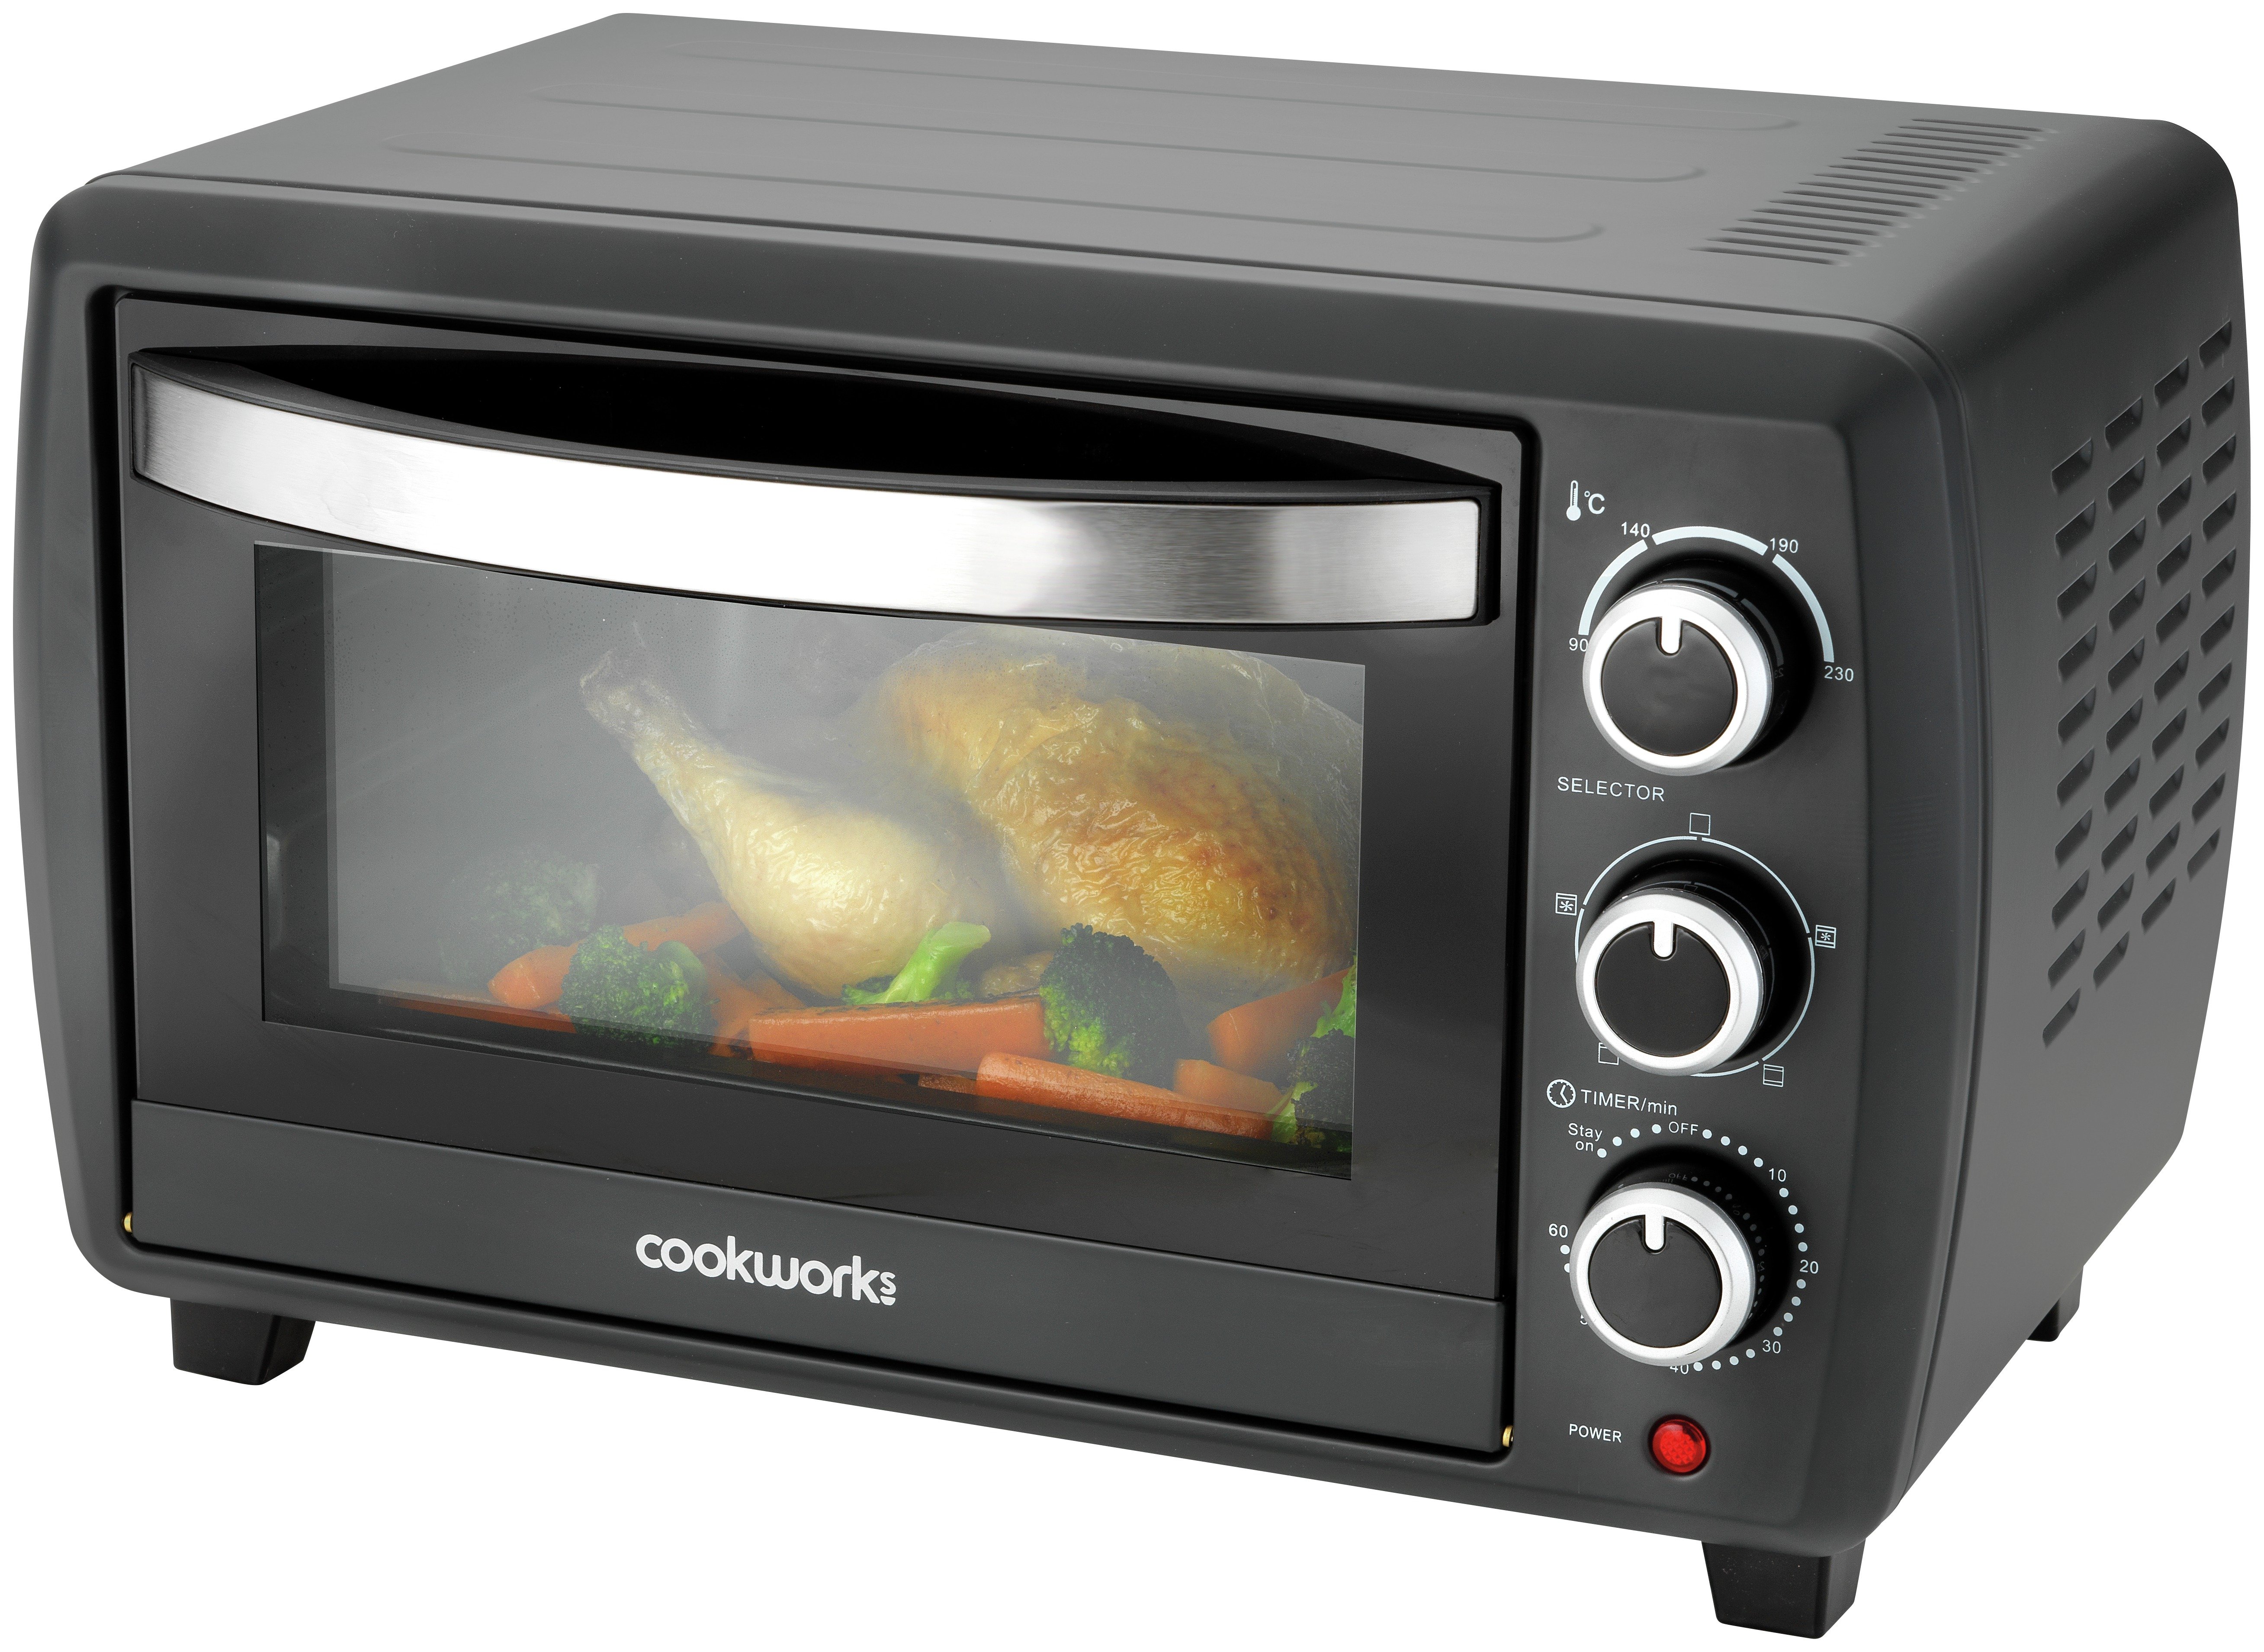 Cookworks 23L Mini Oven Reviews